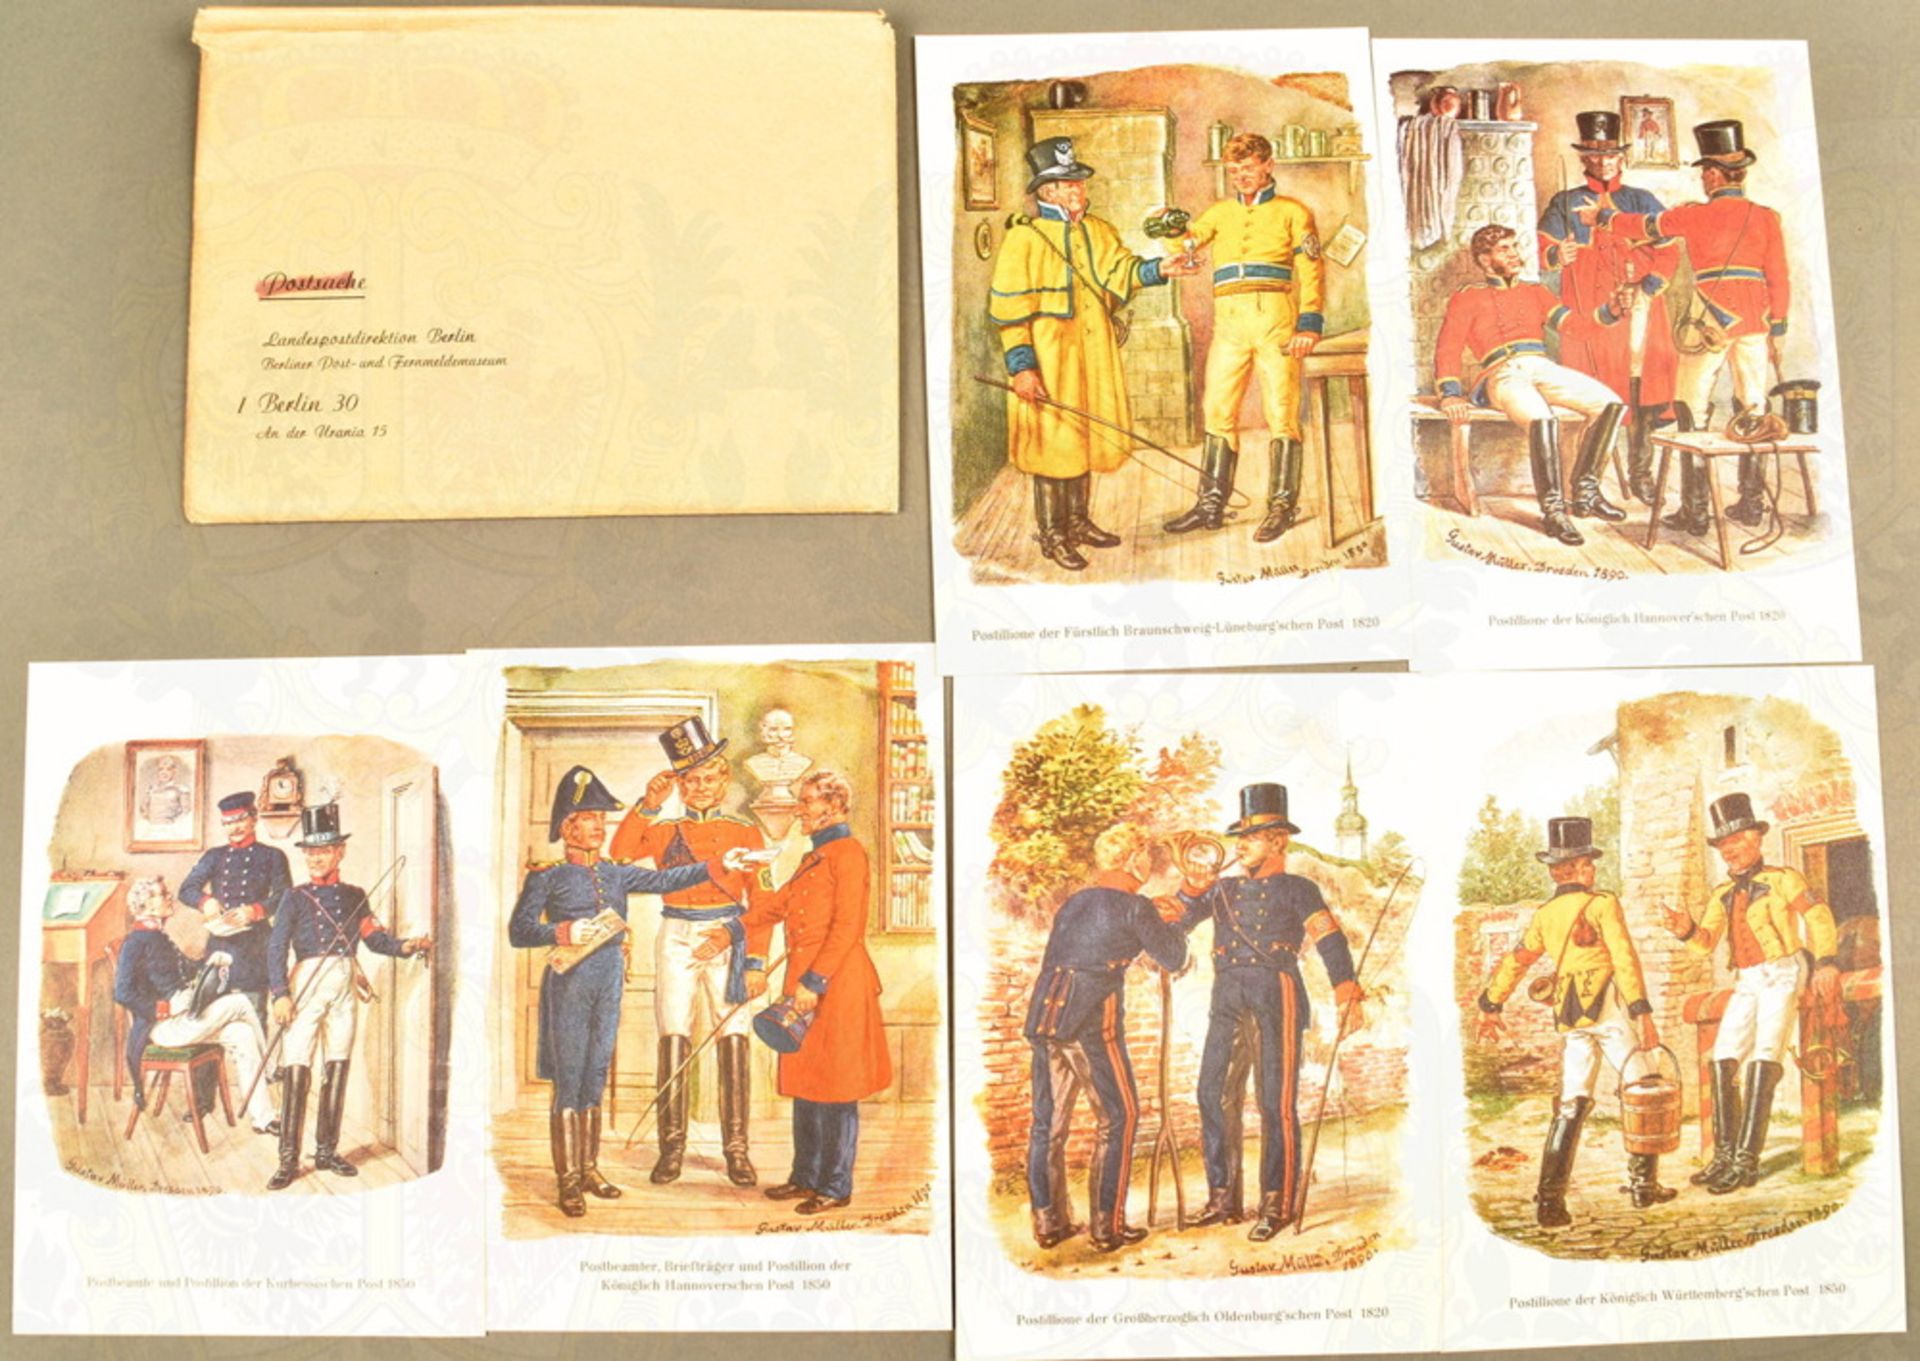 Postkartenserie Postbeamte und Postillione